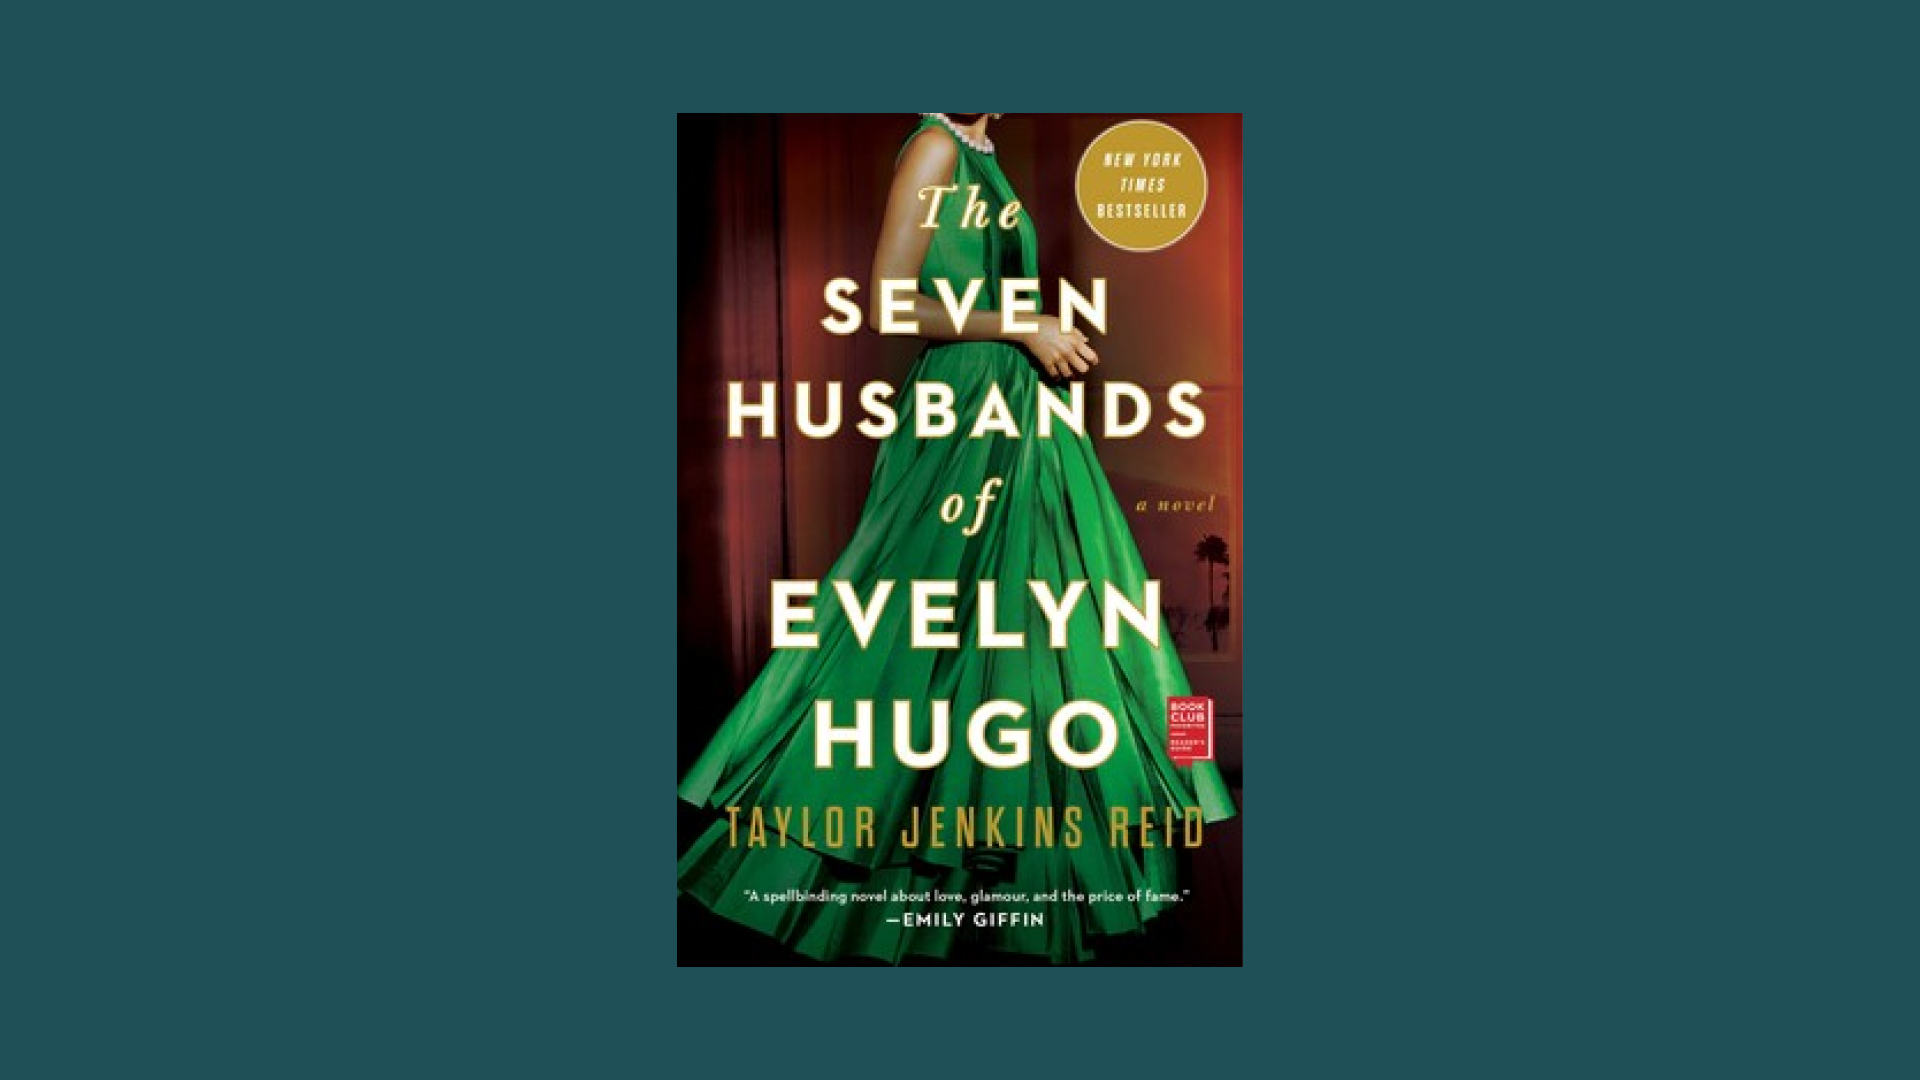 “The Seven Husbands of Evelyn Hugo” by Taylor Jenkins Reid